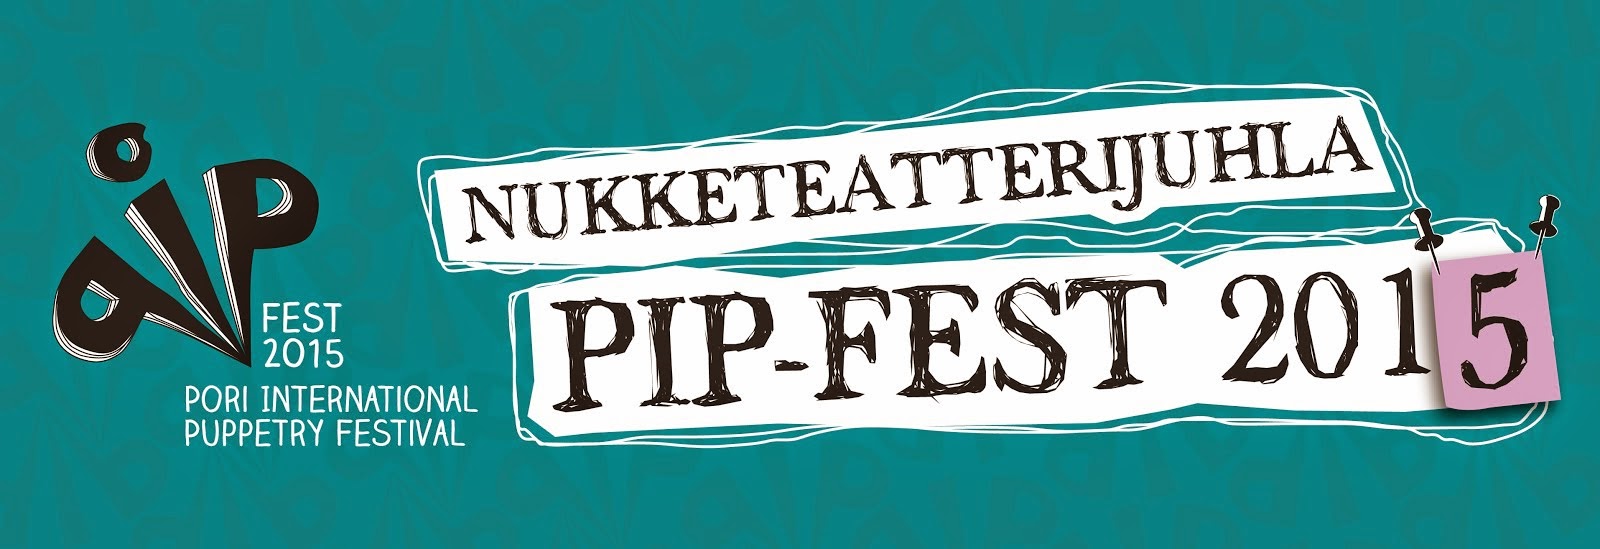 Nukketeatterijuhla PIP-Fest 2015